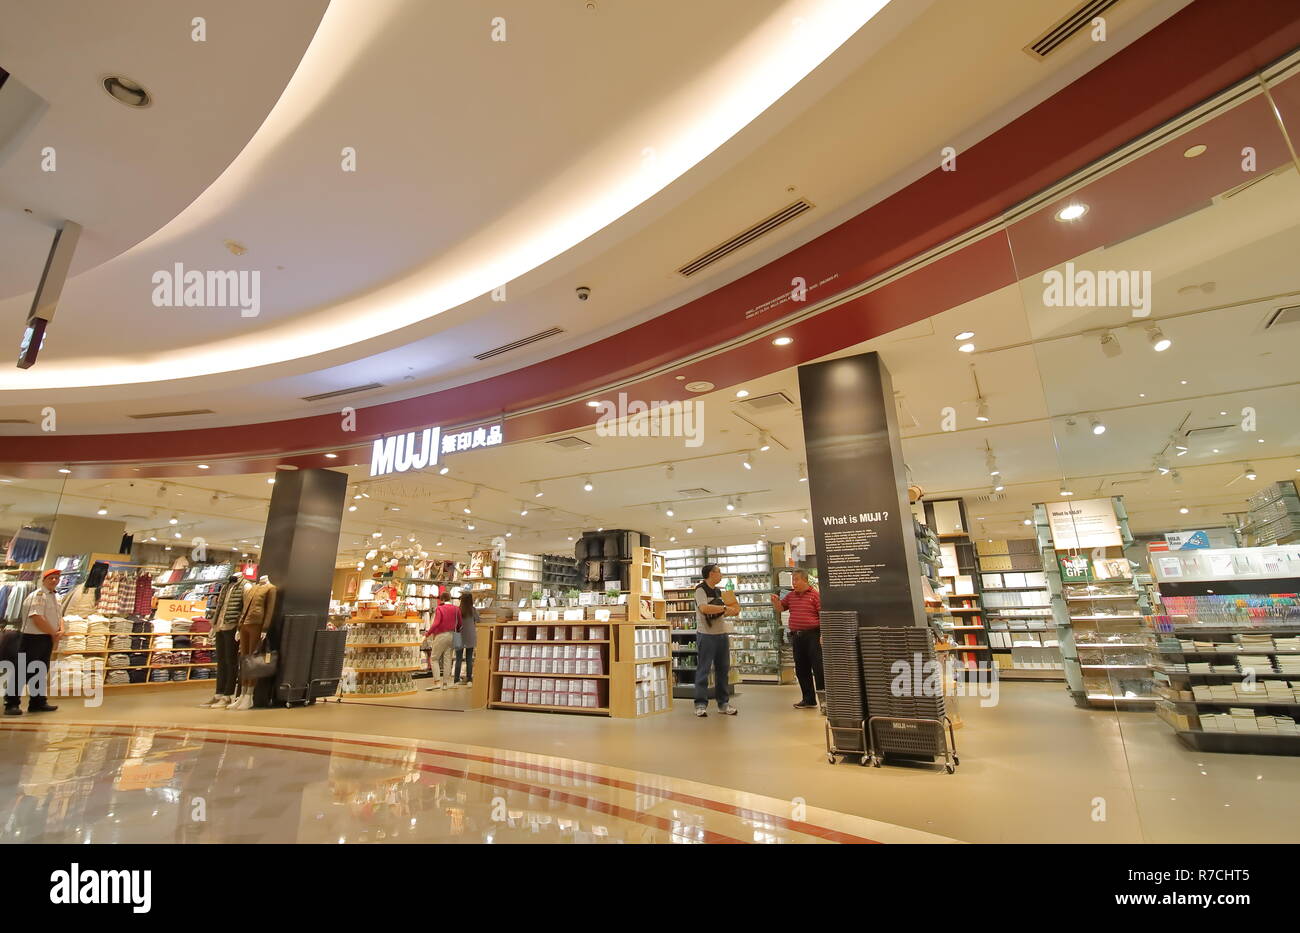 People visit Muji Japanese store at Suria KLCC Shopping mall Kuala Lumpur Malaysia Stock Photo